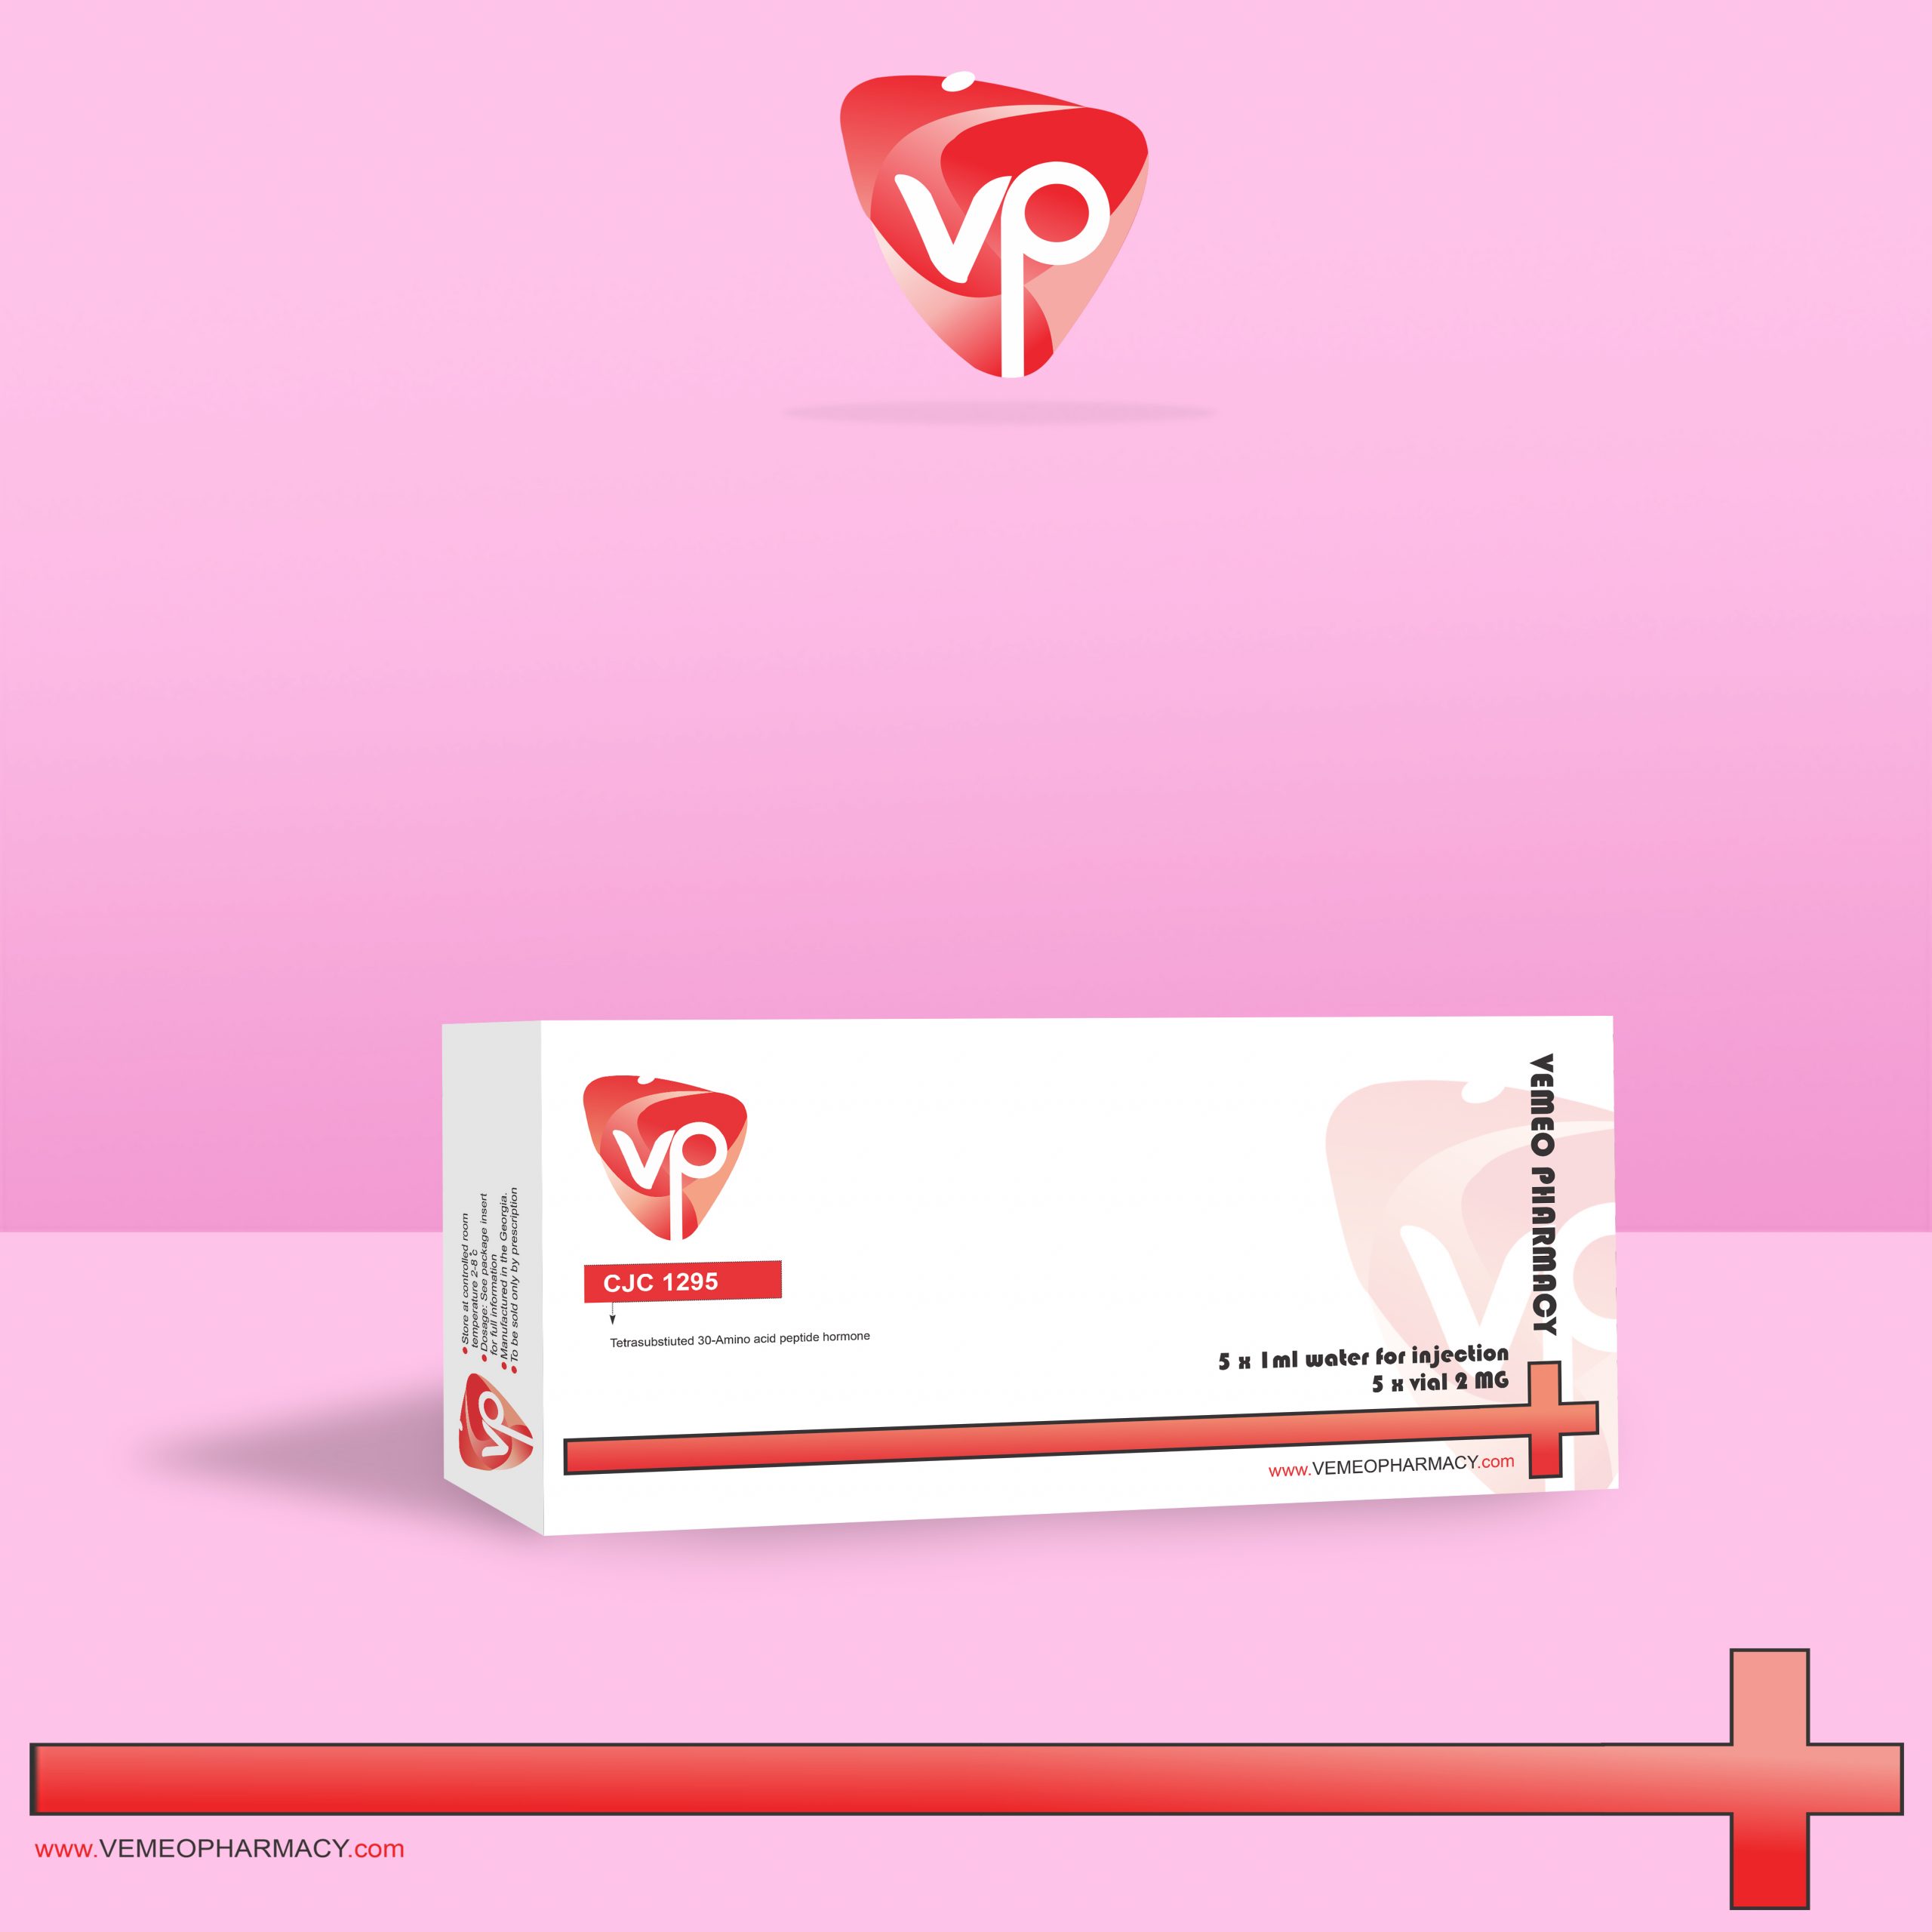 CJC 1295 – Vemeo Pharmacy